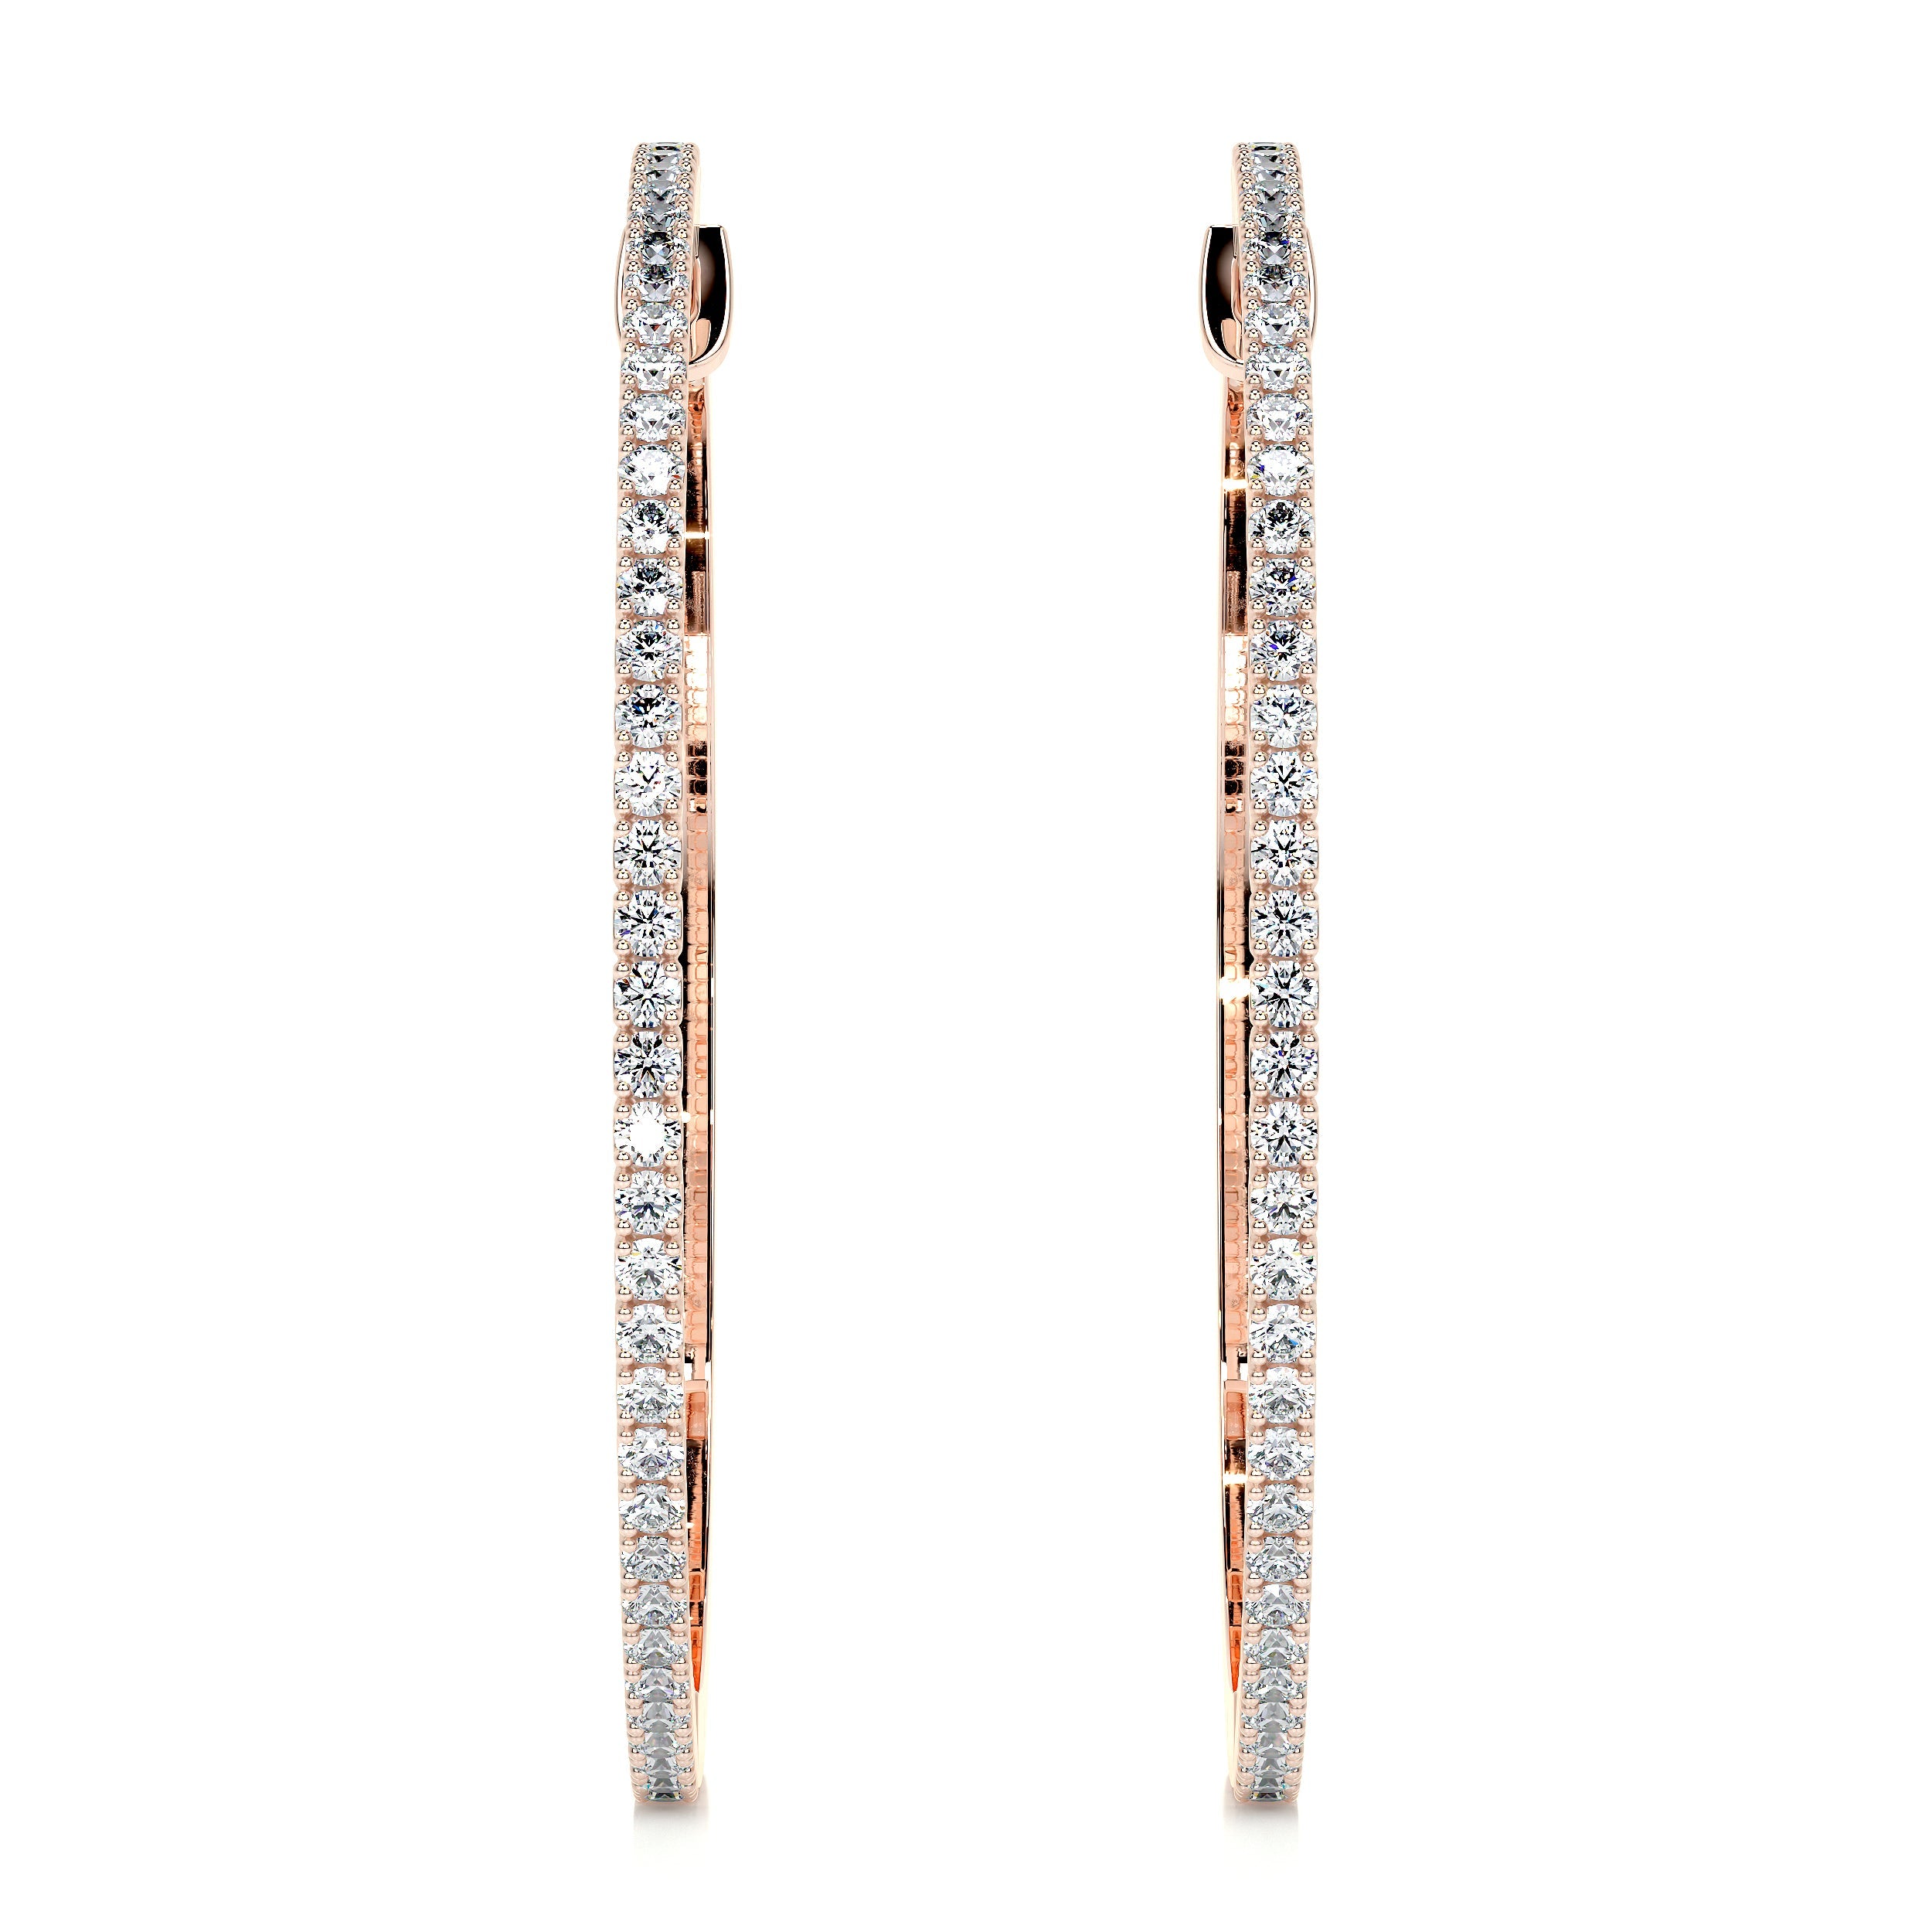 Cali Hoop Lab Grown Diamond Earrings   (0.6 Carat) -14K Rose Gold